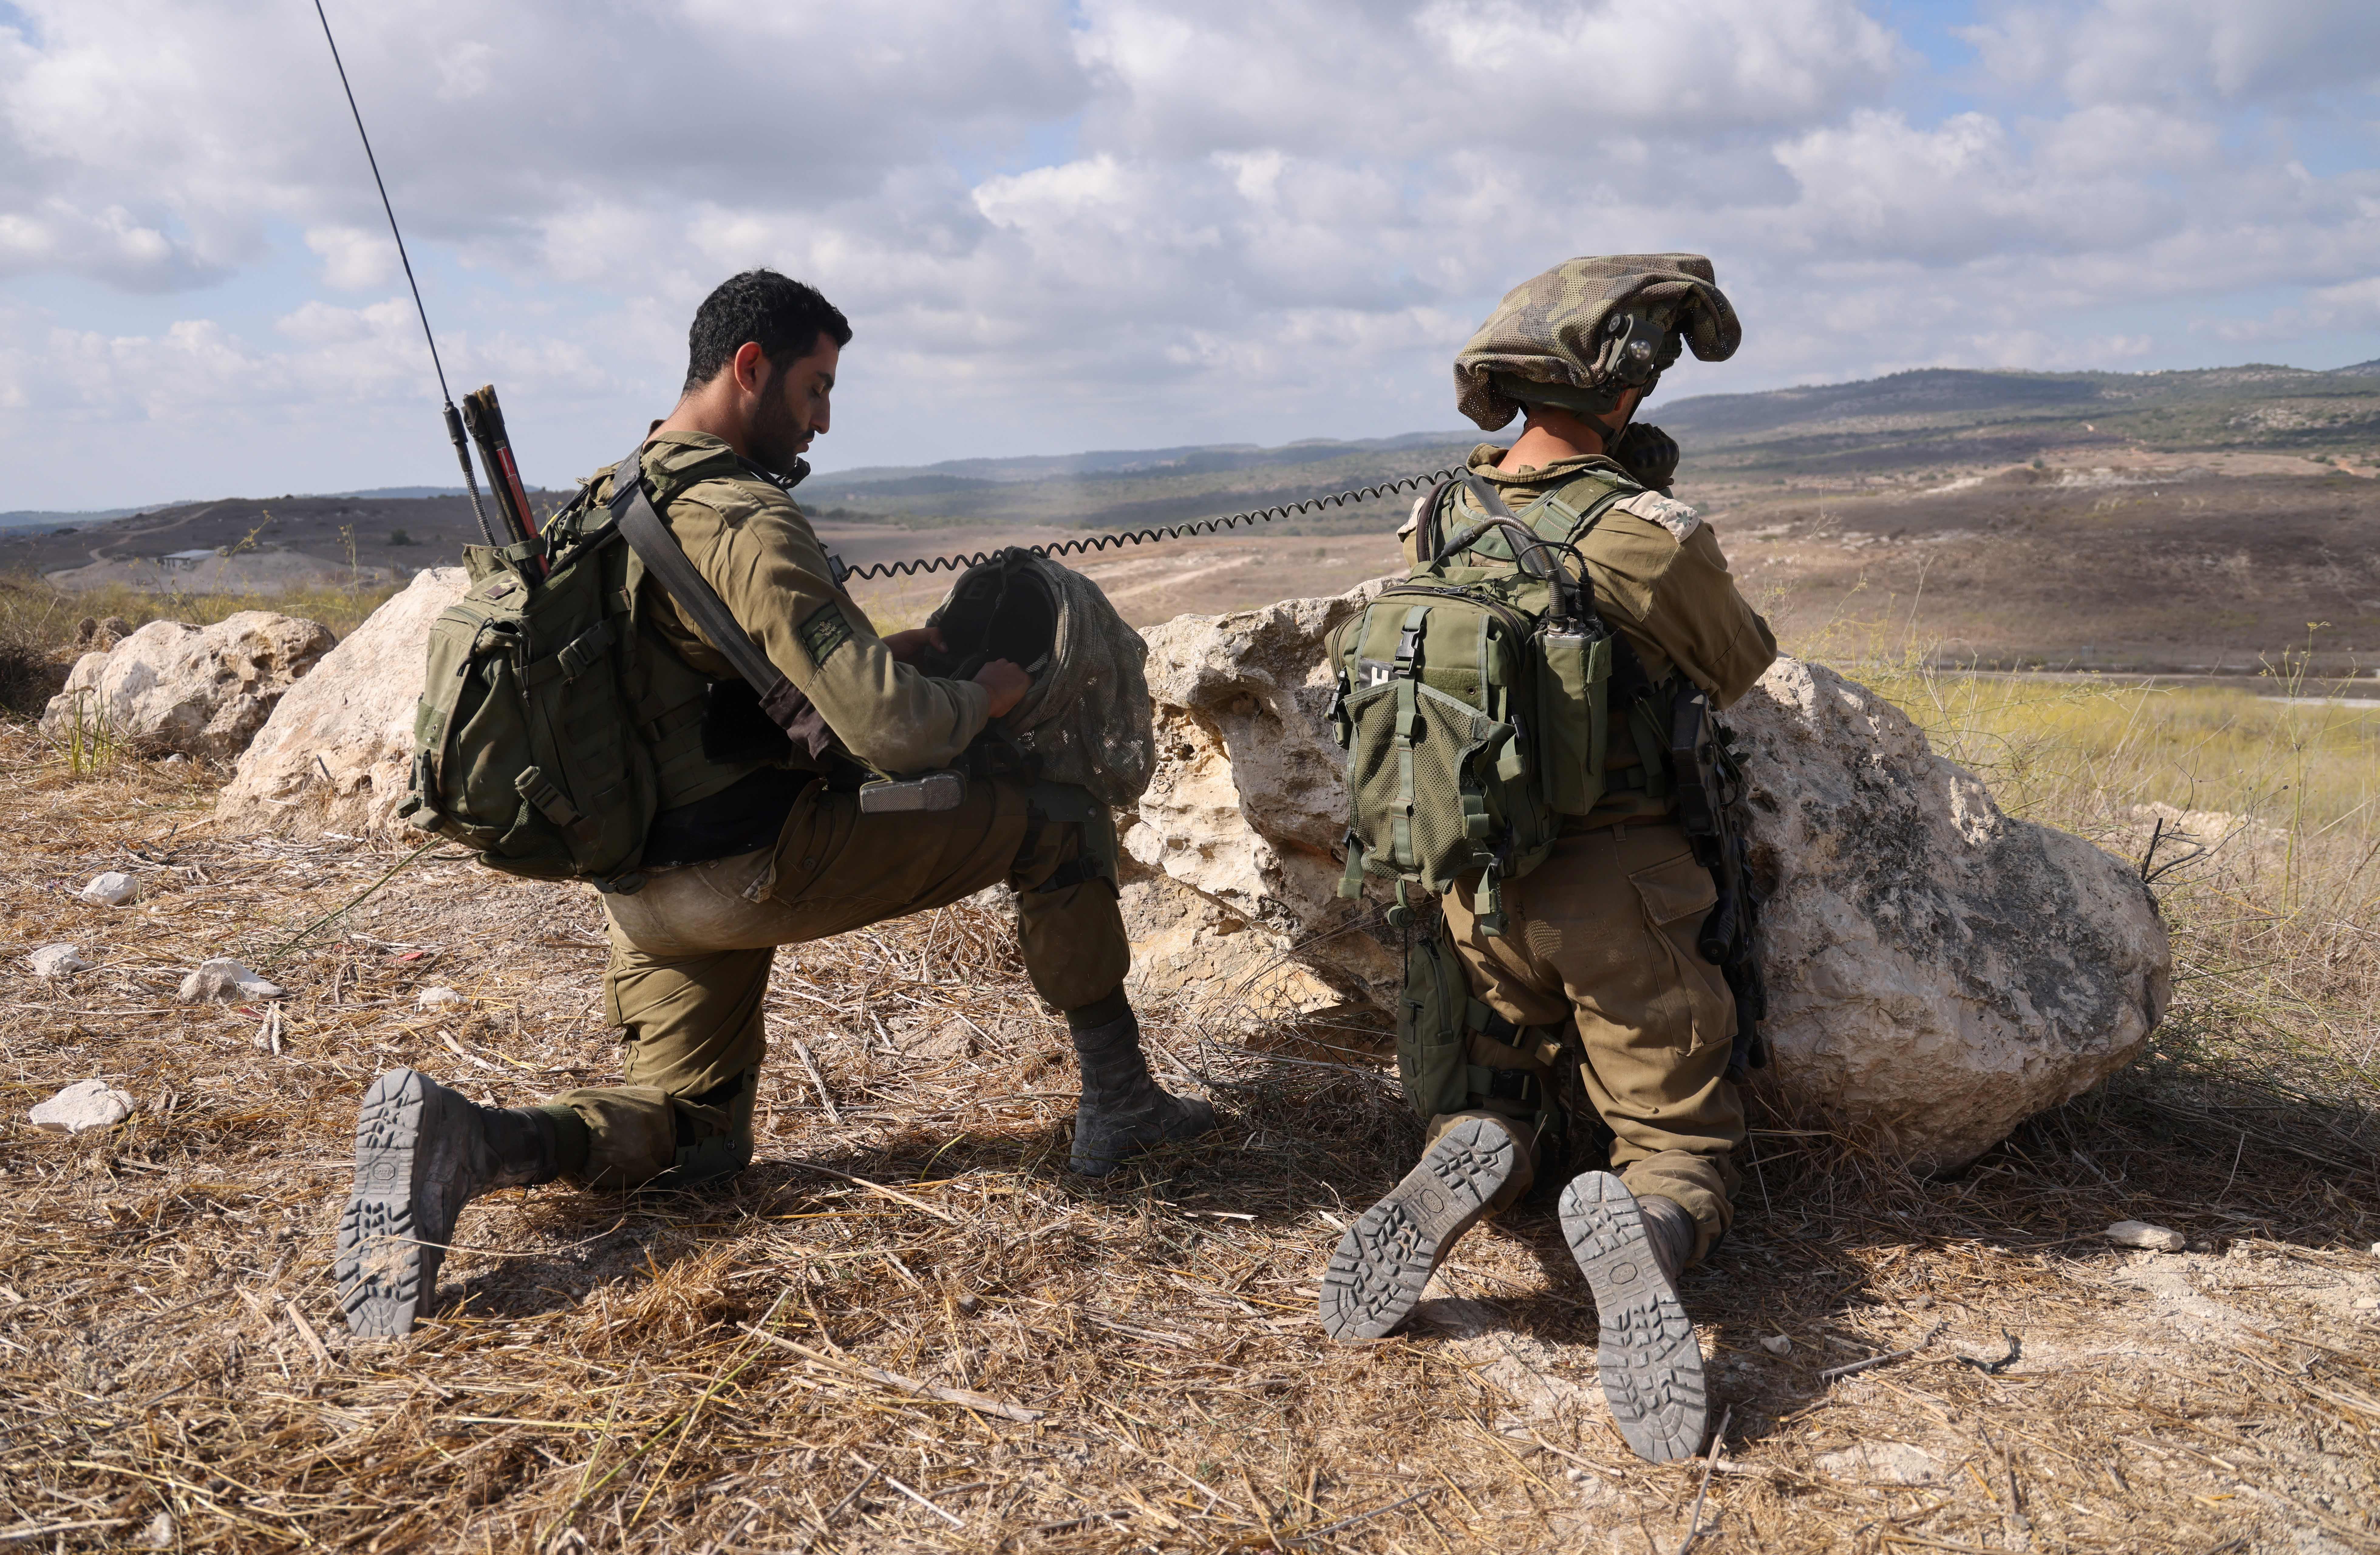 İsrail: Hava, deniz ve karadan ortak ve koordineli bir operasyona hazırız